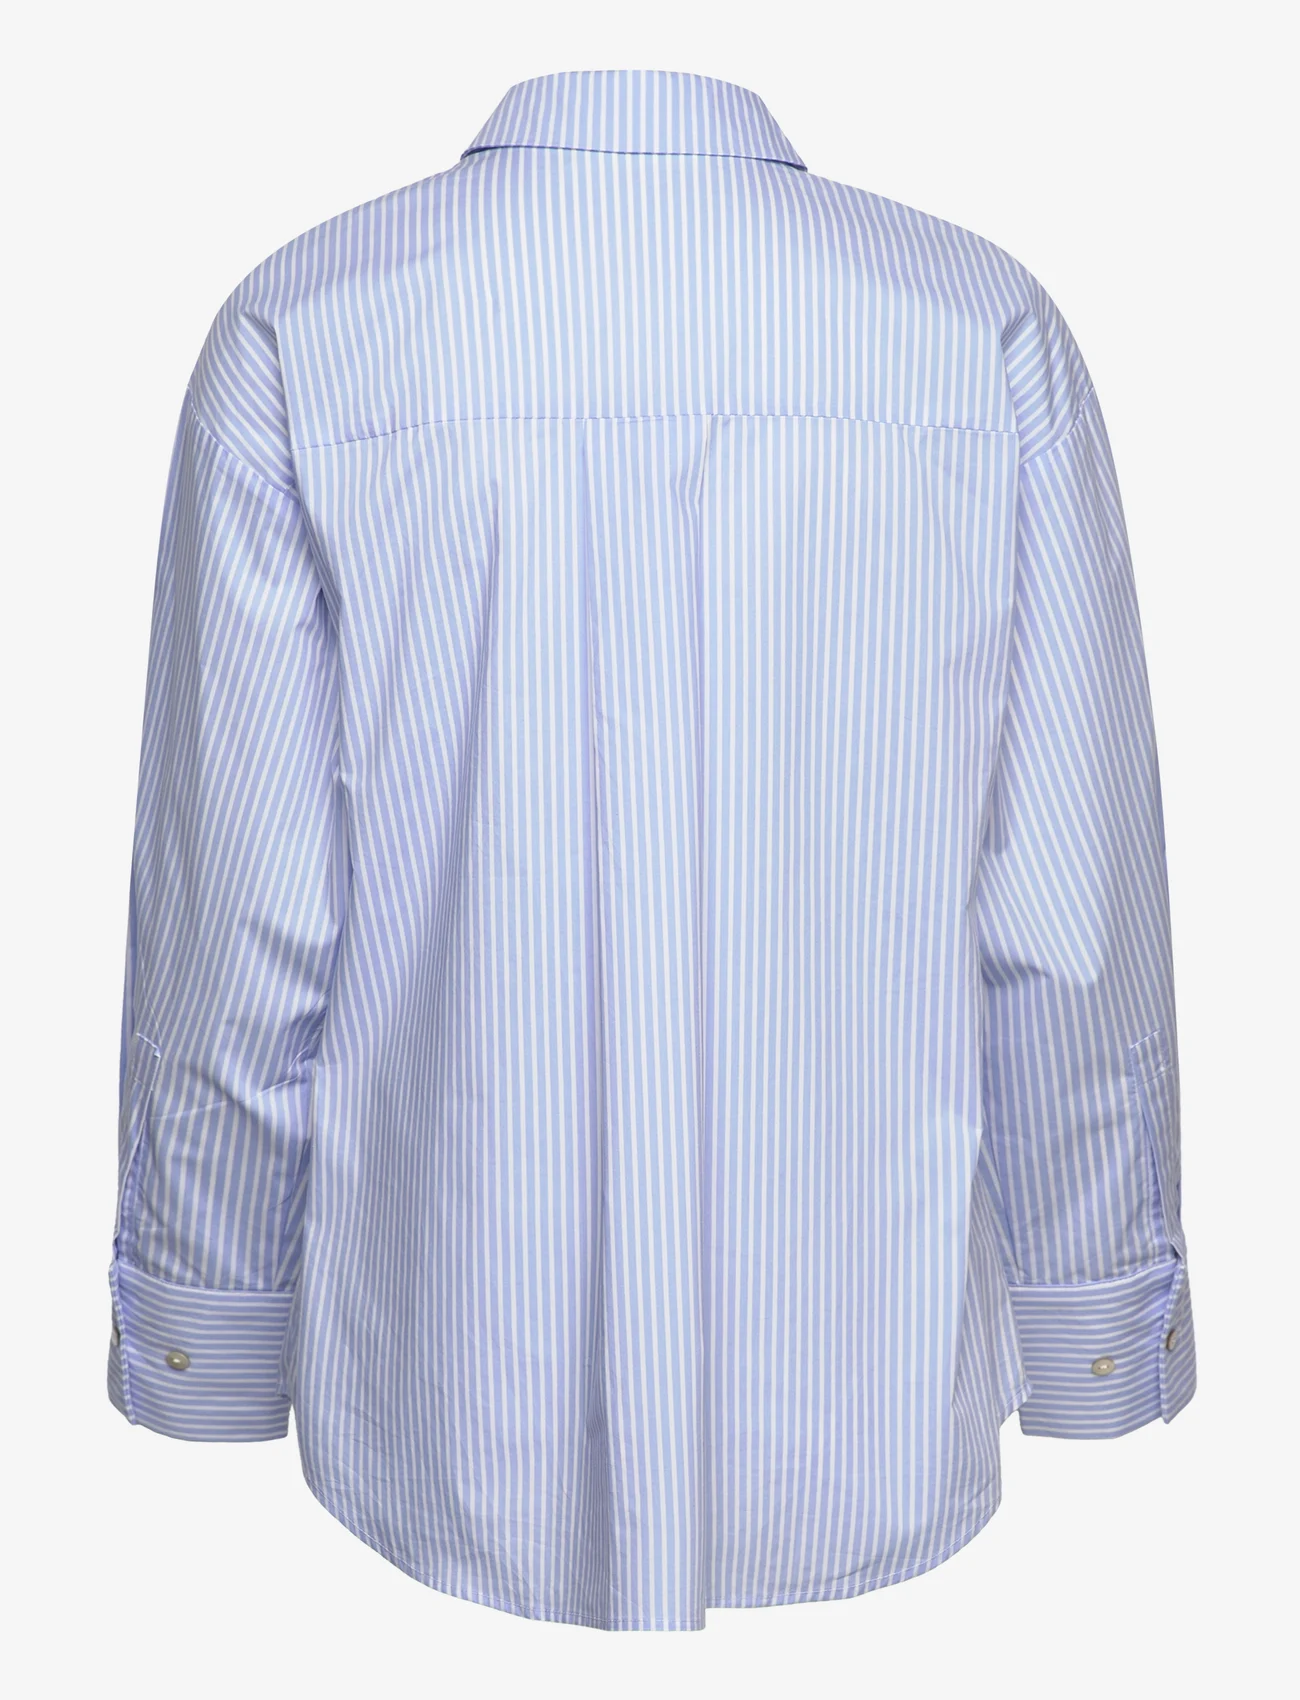 Sofie Schnoor - Shirt - marškiniai ilgomis rankovėmis - light blue striped - 1